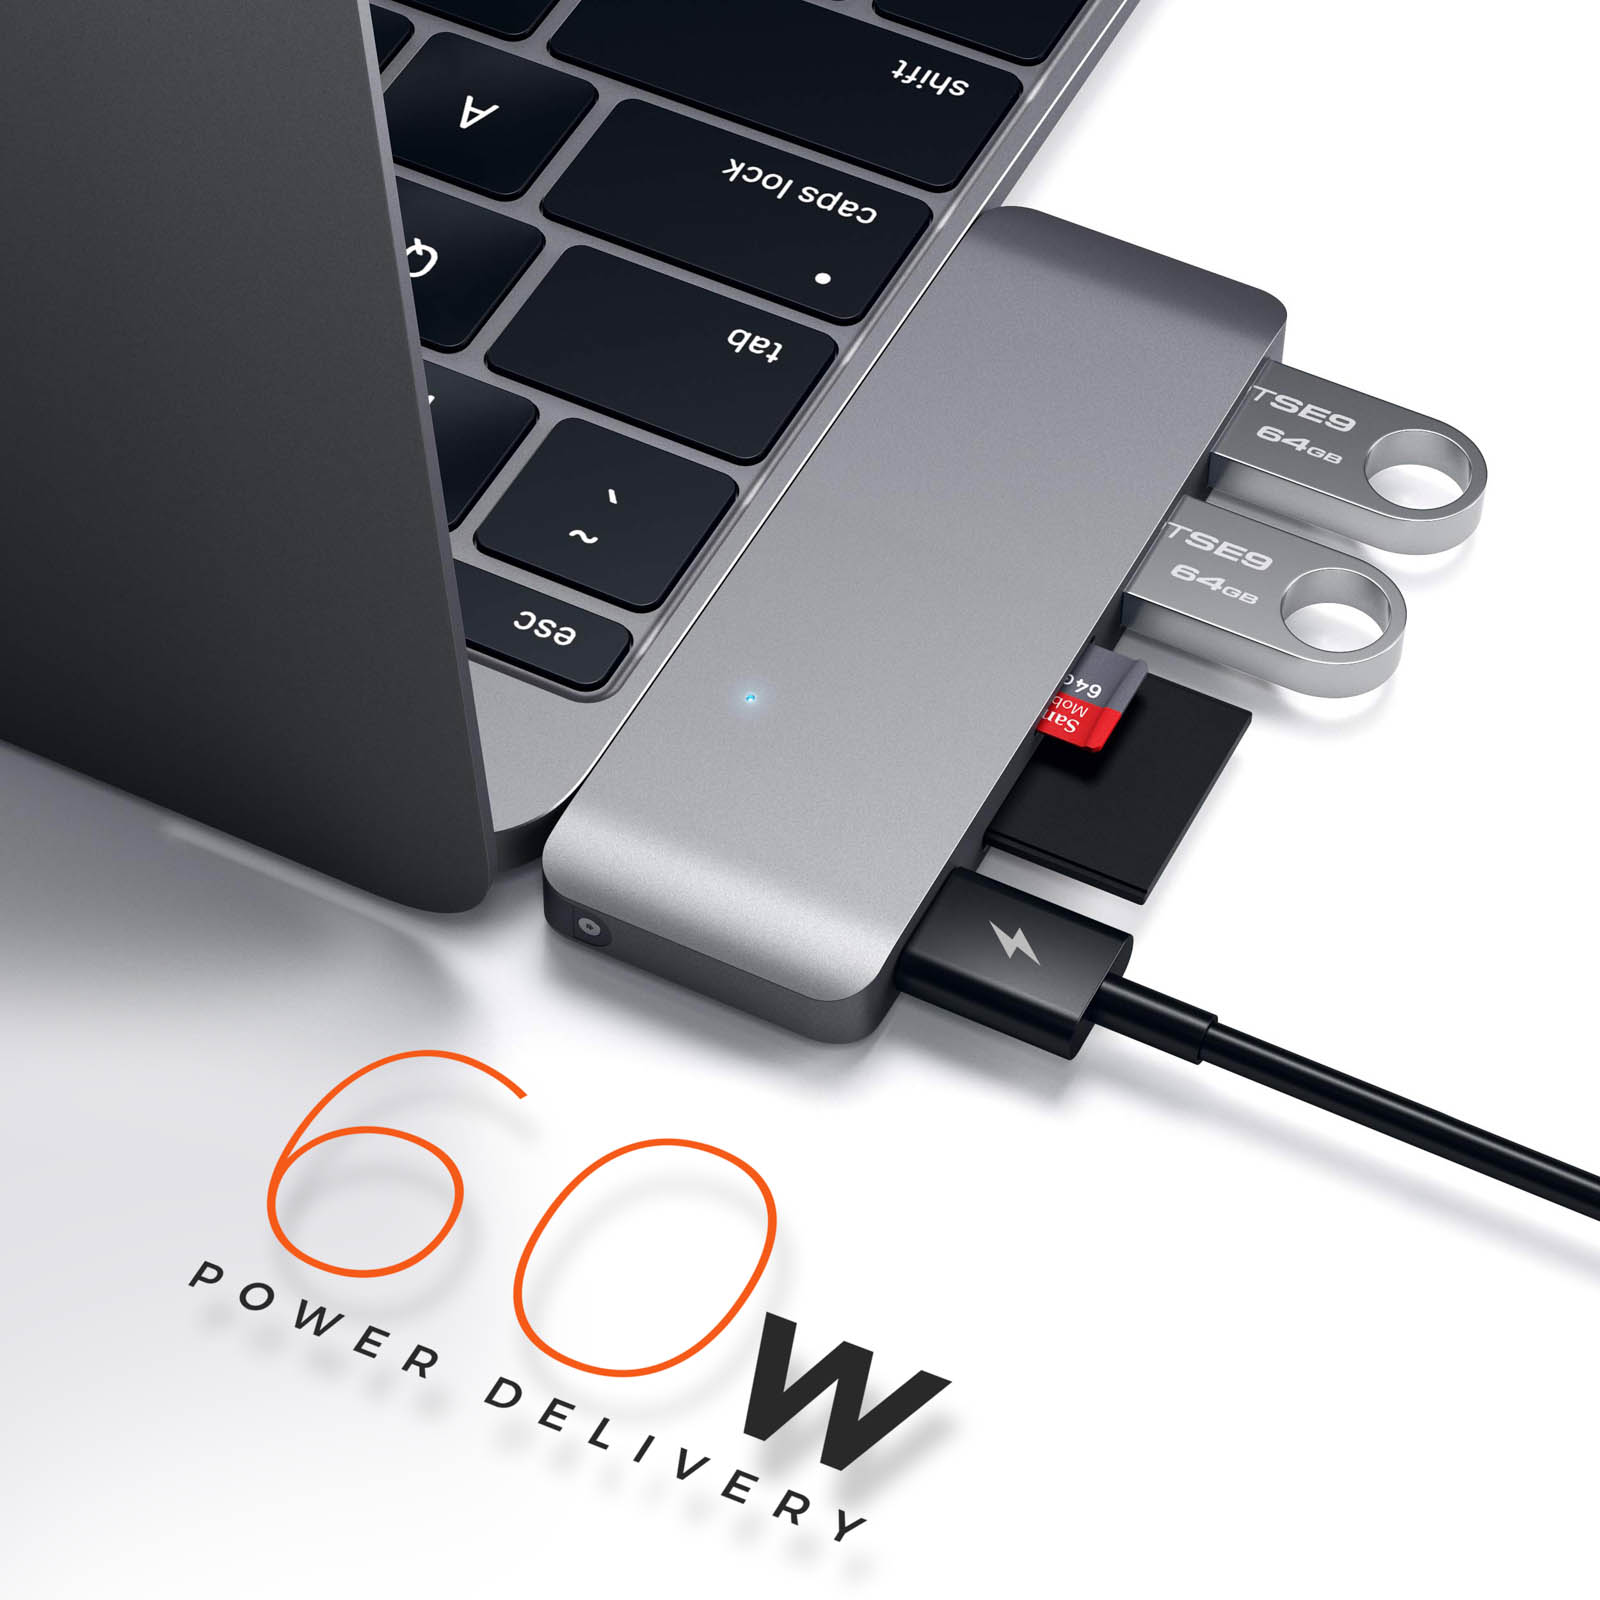 MacBook : ce que l'on peut connecter à l'adaptateur multiport USB